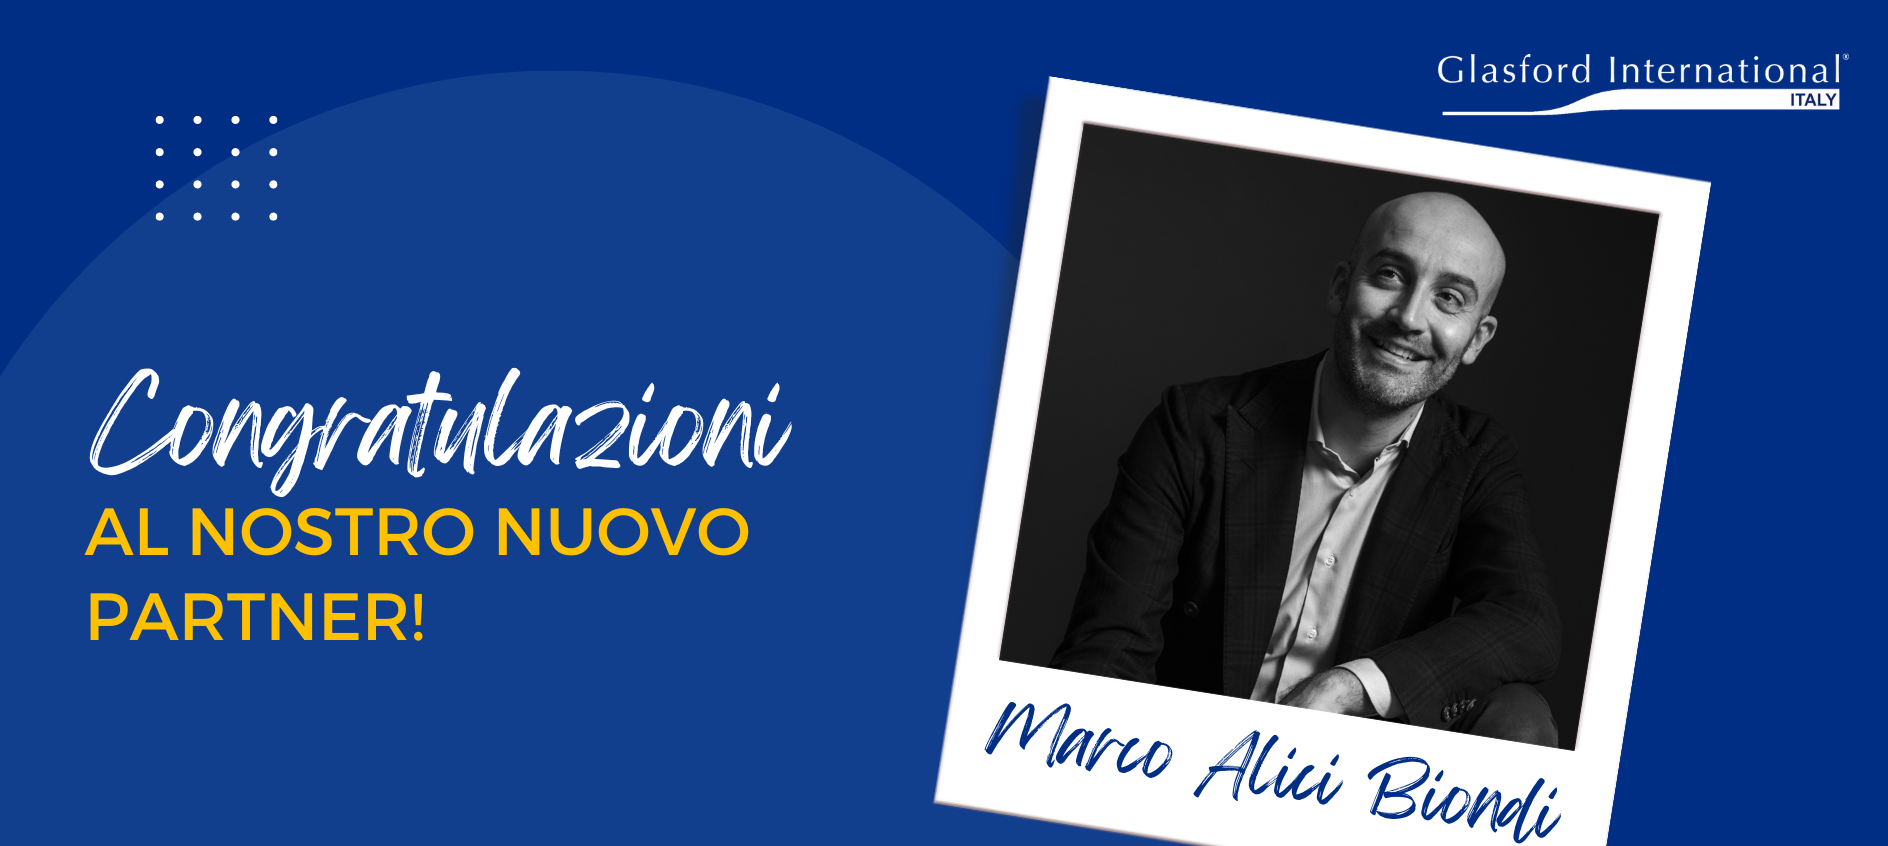 Marco Alici Biondi, nuovo Partner di Glasford International Italy